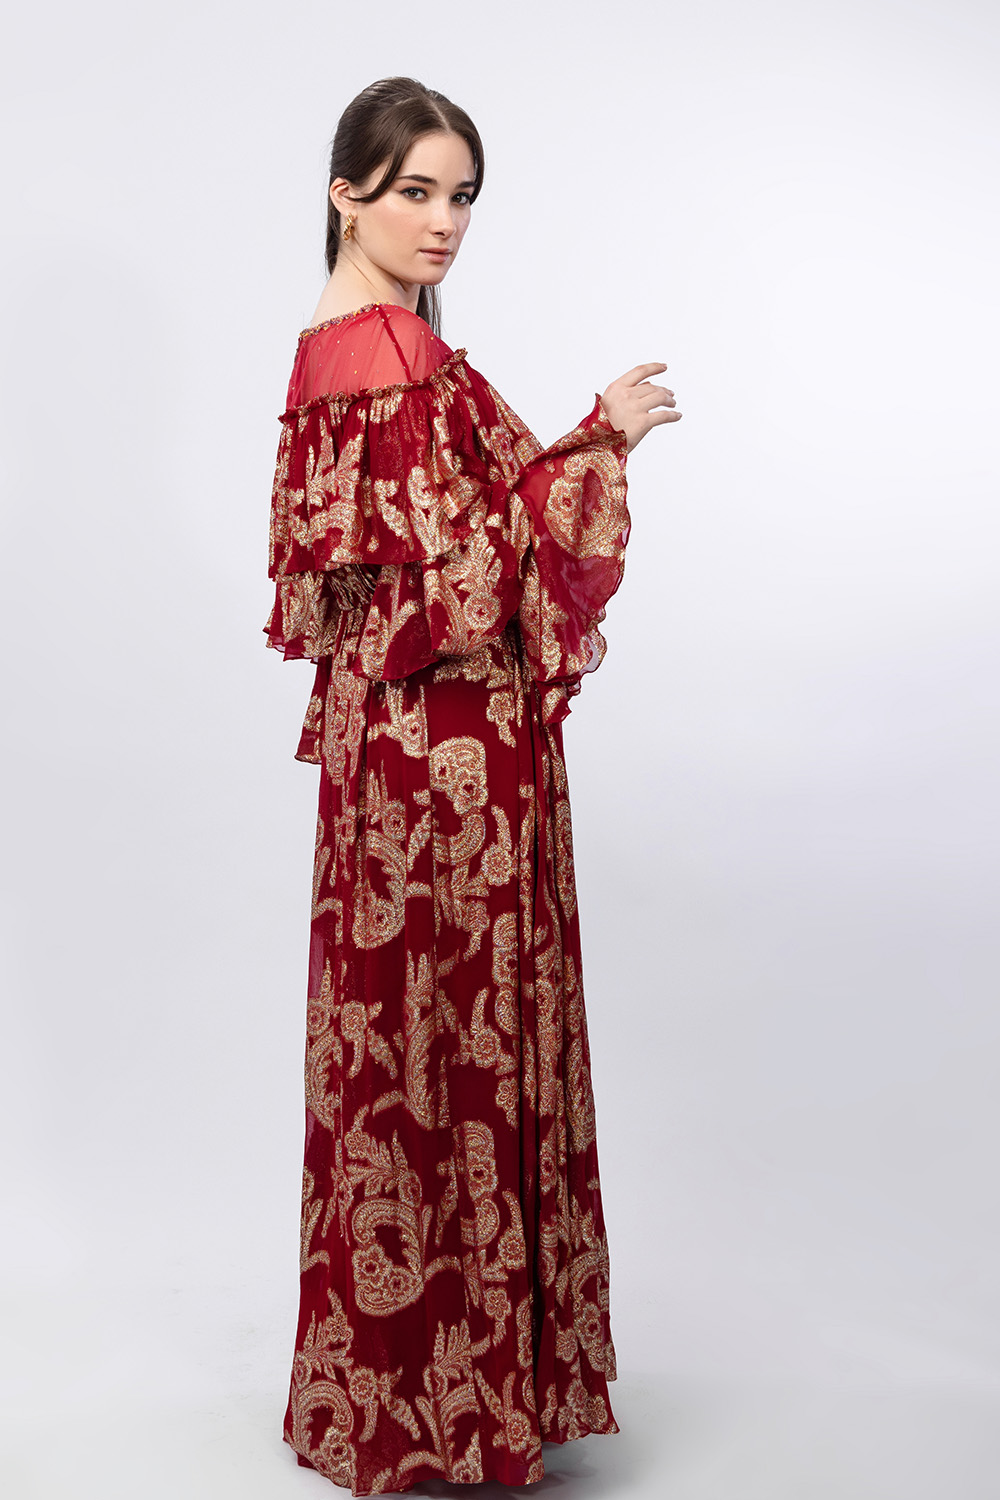 Radiant Red Brasso Ruffled Shoulder Detail Dress